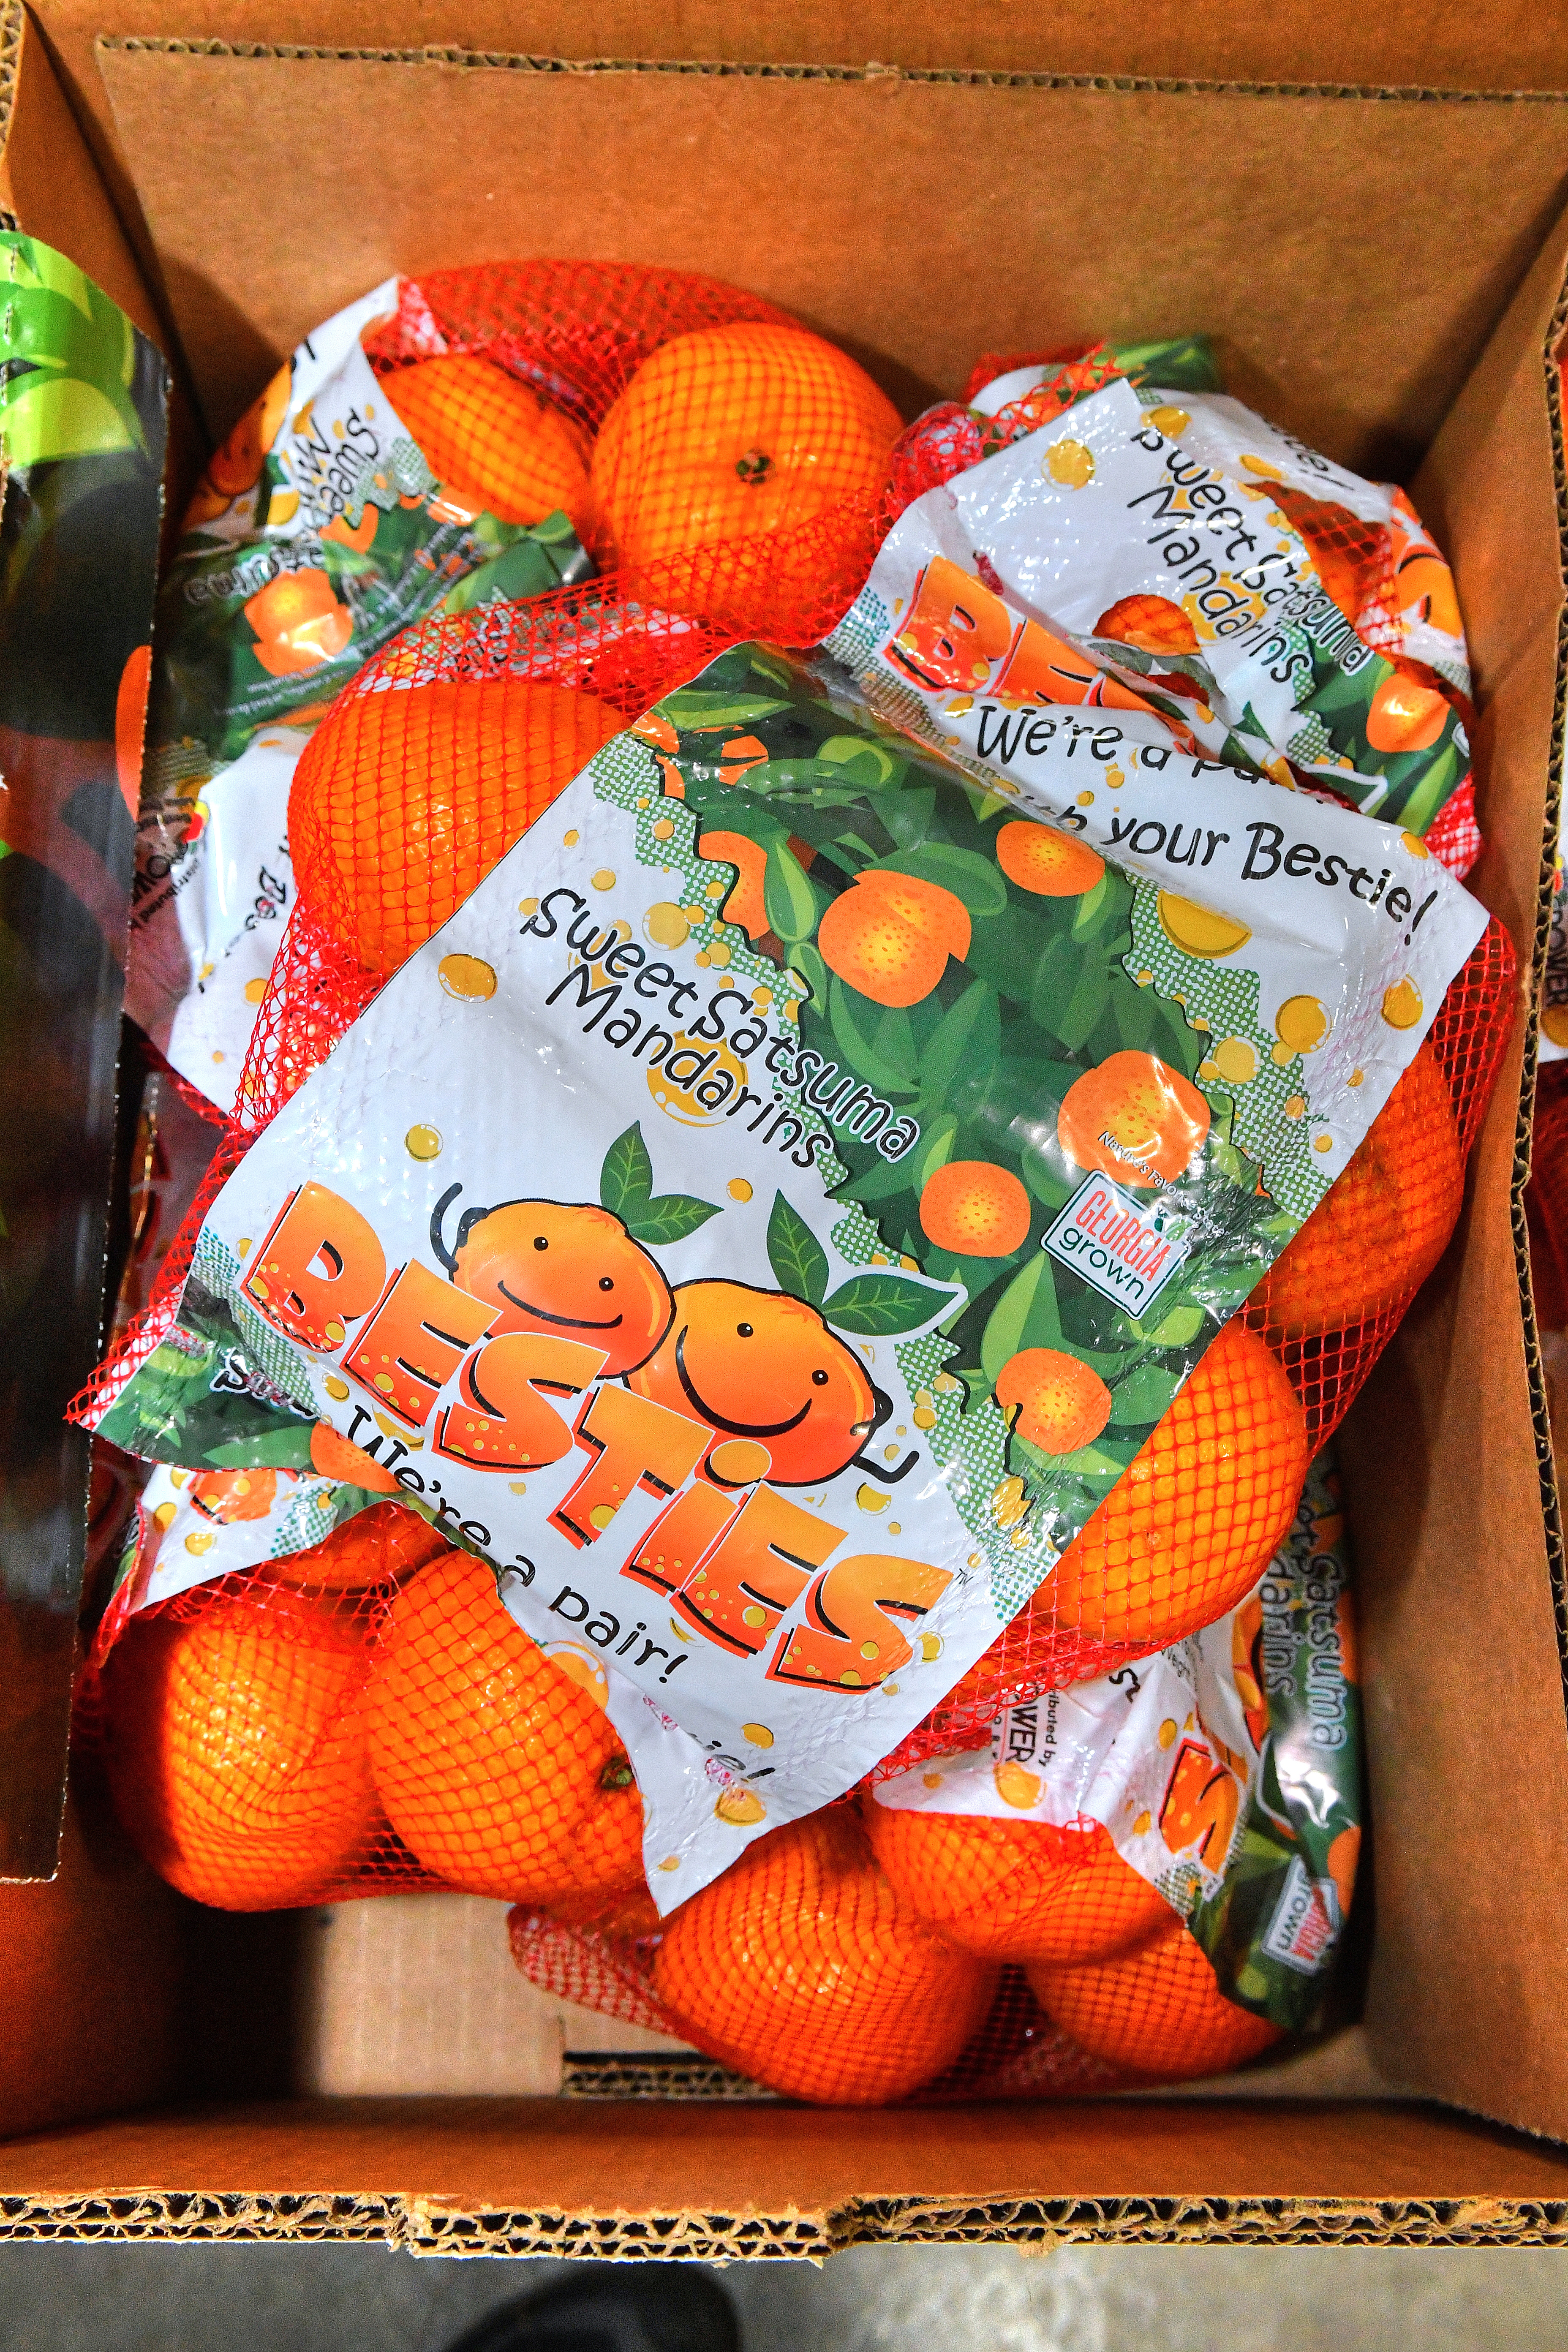 Sumo Citrus to Harvest Its Largest Crop - Citrus Industry Magazine